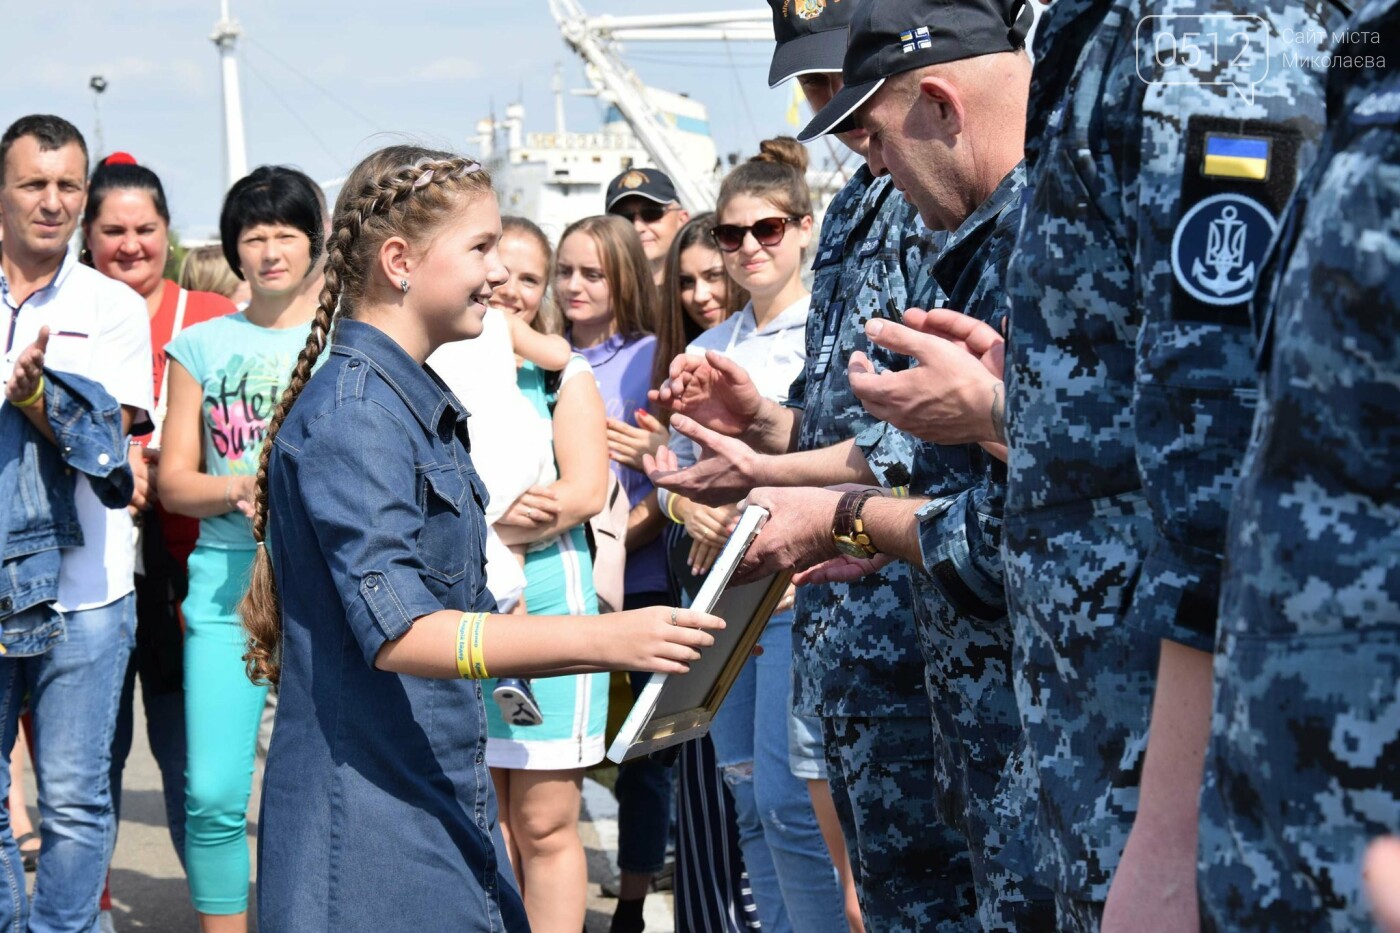 Ліда вручає картину бійцям ВМС.2019 рік. Фото Facebook ВМС